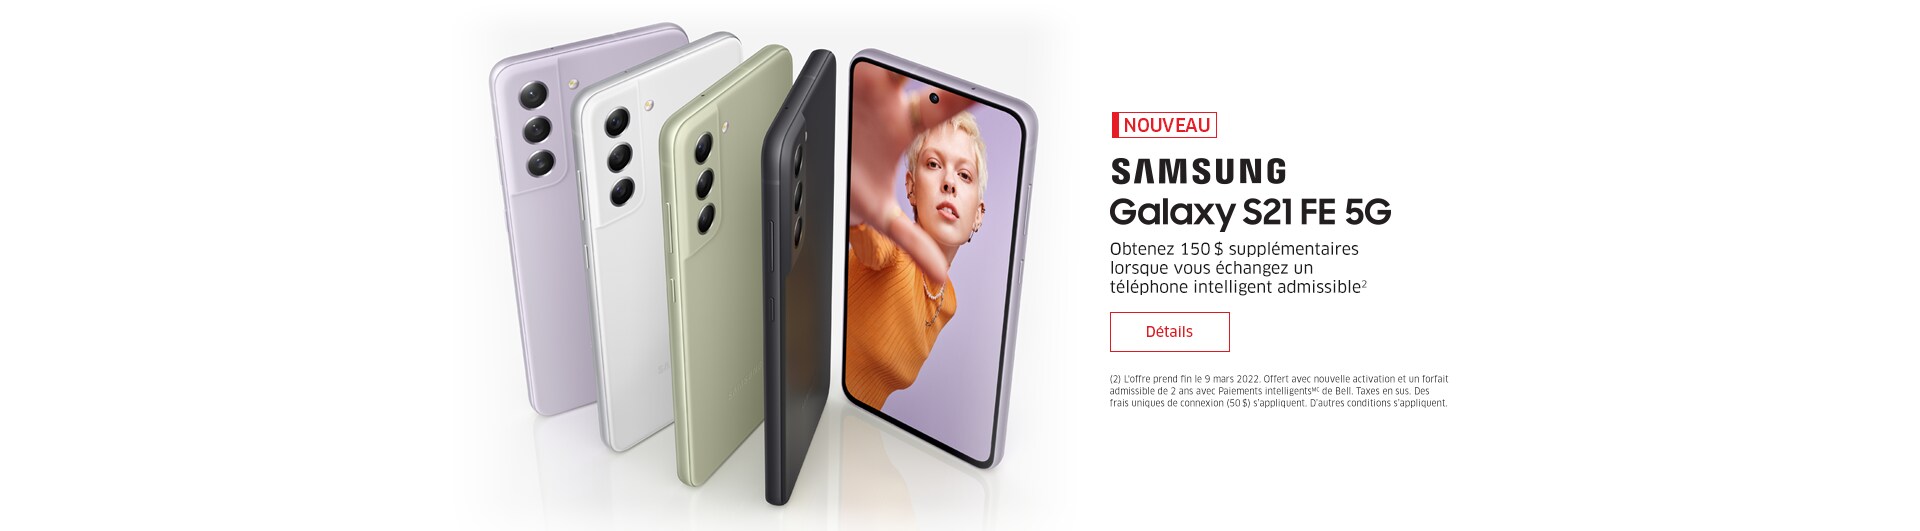 NOUVEAU SAMSUNG Galaxy S21 FE 5G Obtenez 150 $ supplémentaires lorsque vous échangez un téléphone intelligent admissible2  Détails / Magasiner